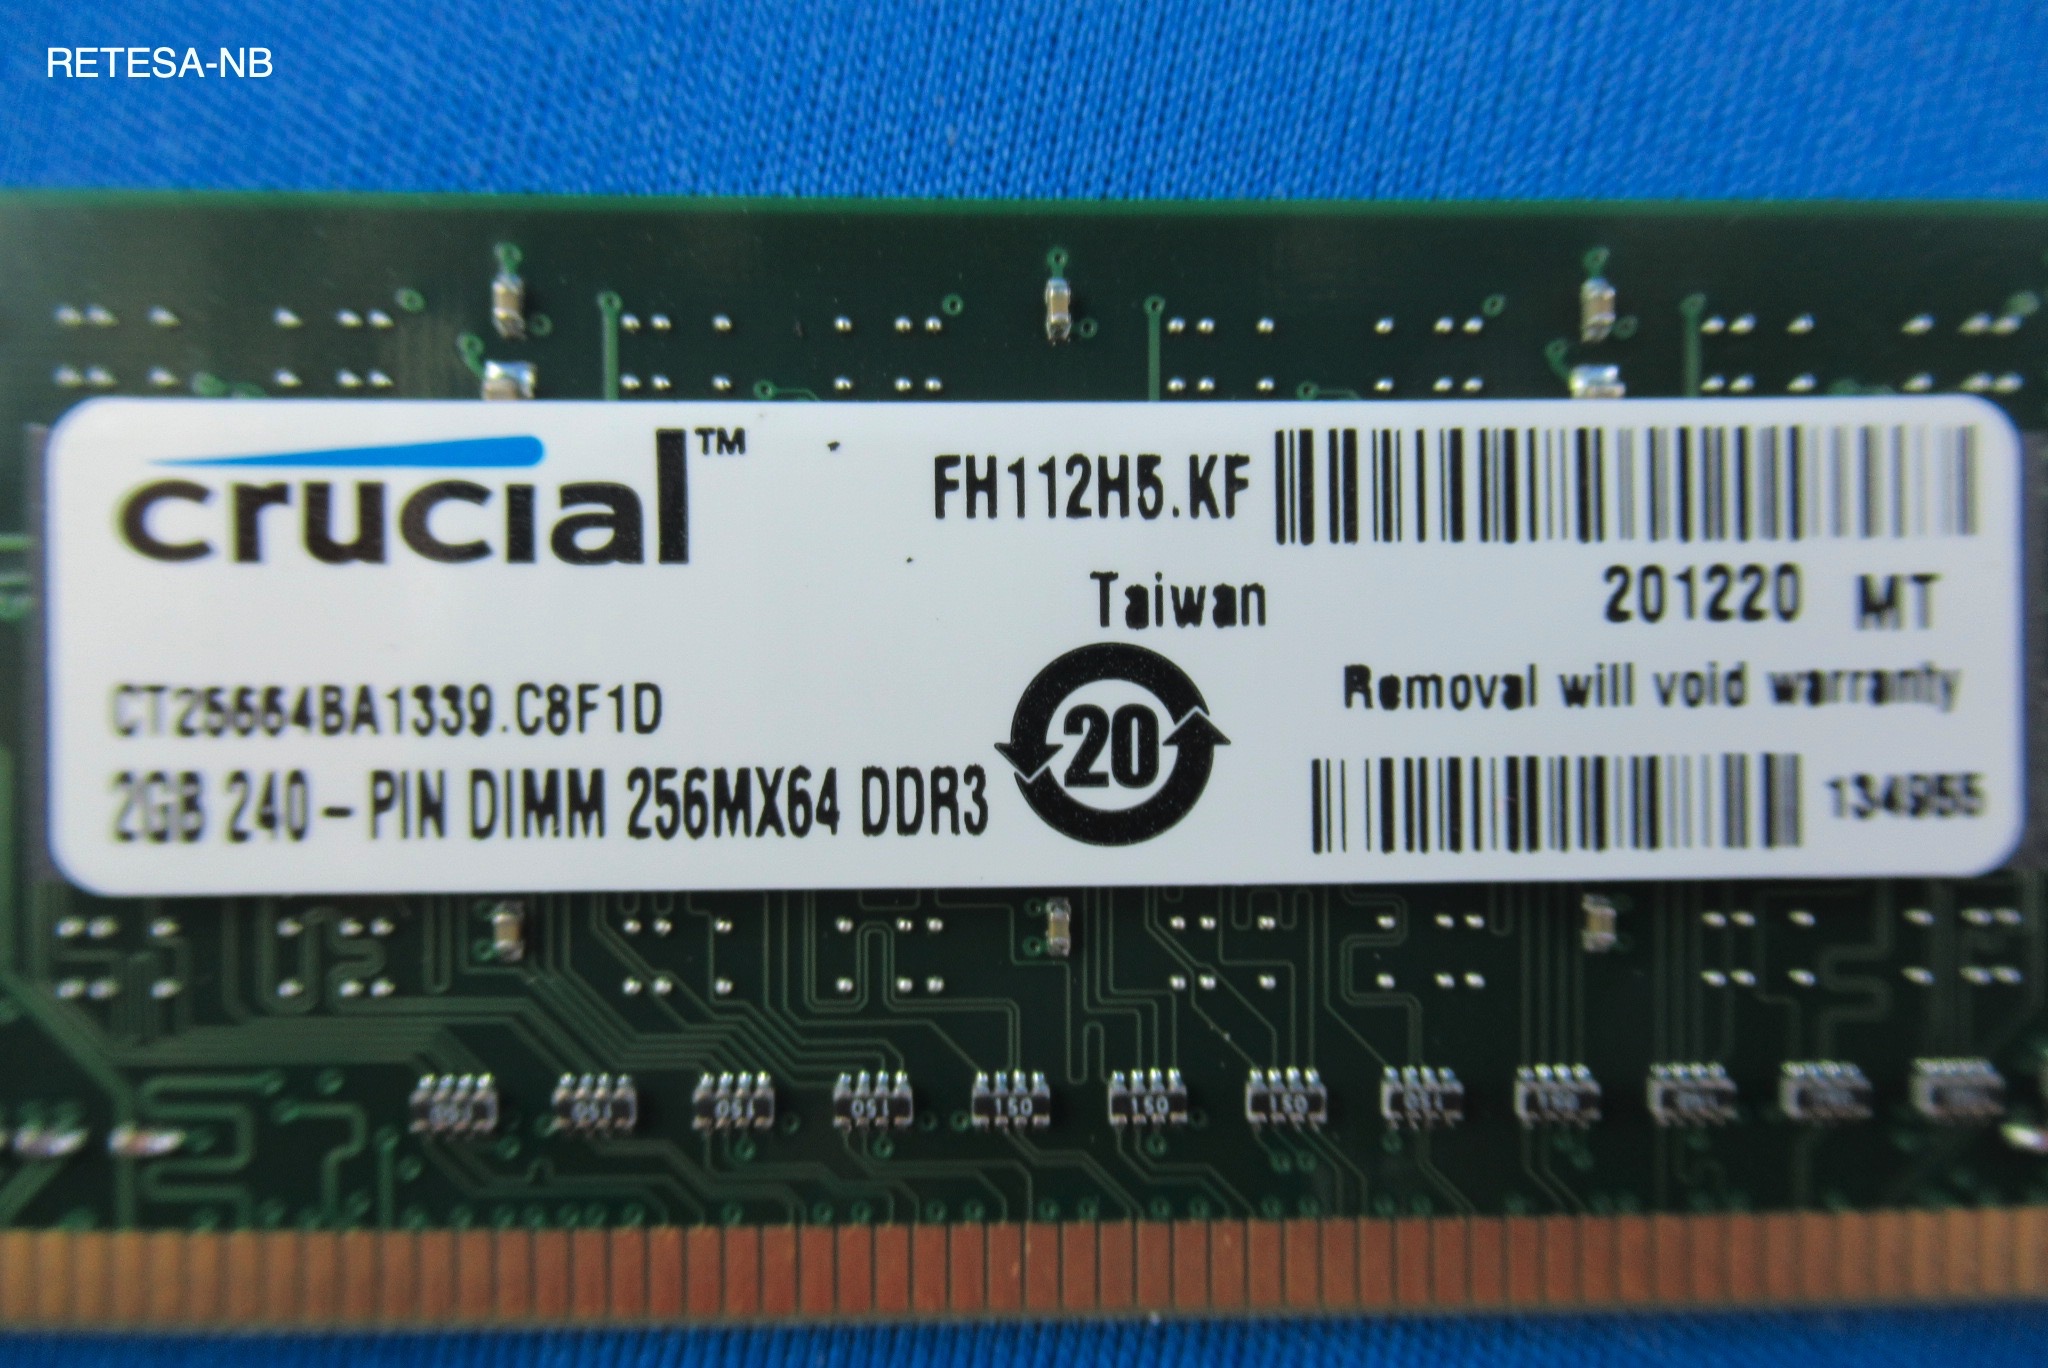 DDR3-RAM 2GB PC1333 CL9 Crucial CT25664BA1339